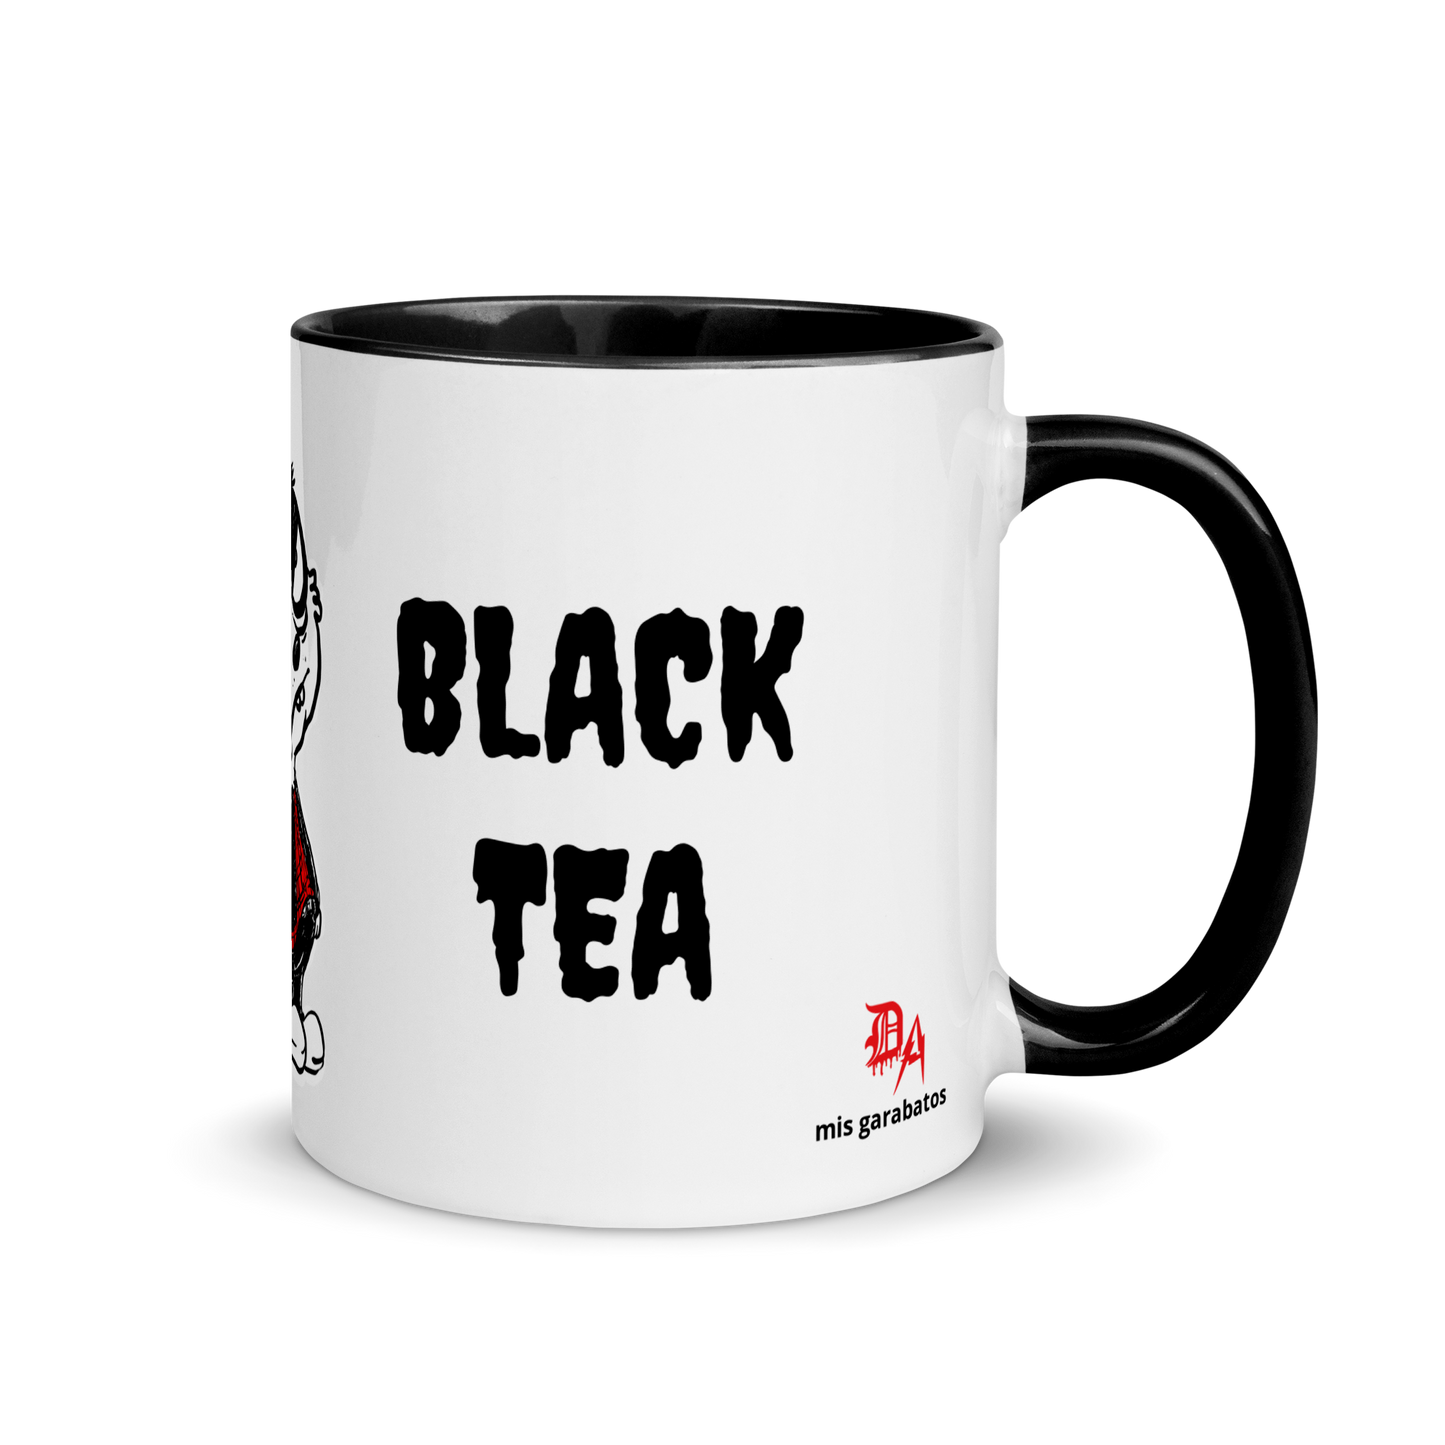 Jesica Giovanetti "Black Coffee/Black Tea" Mug